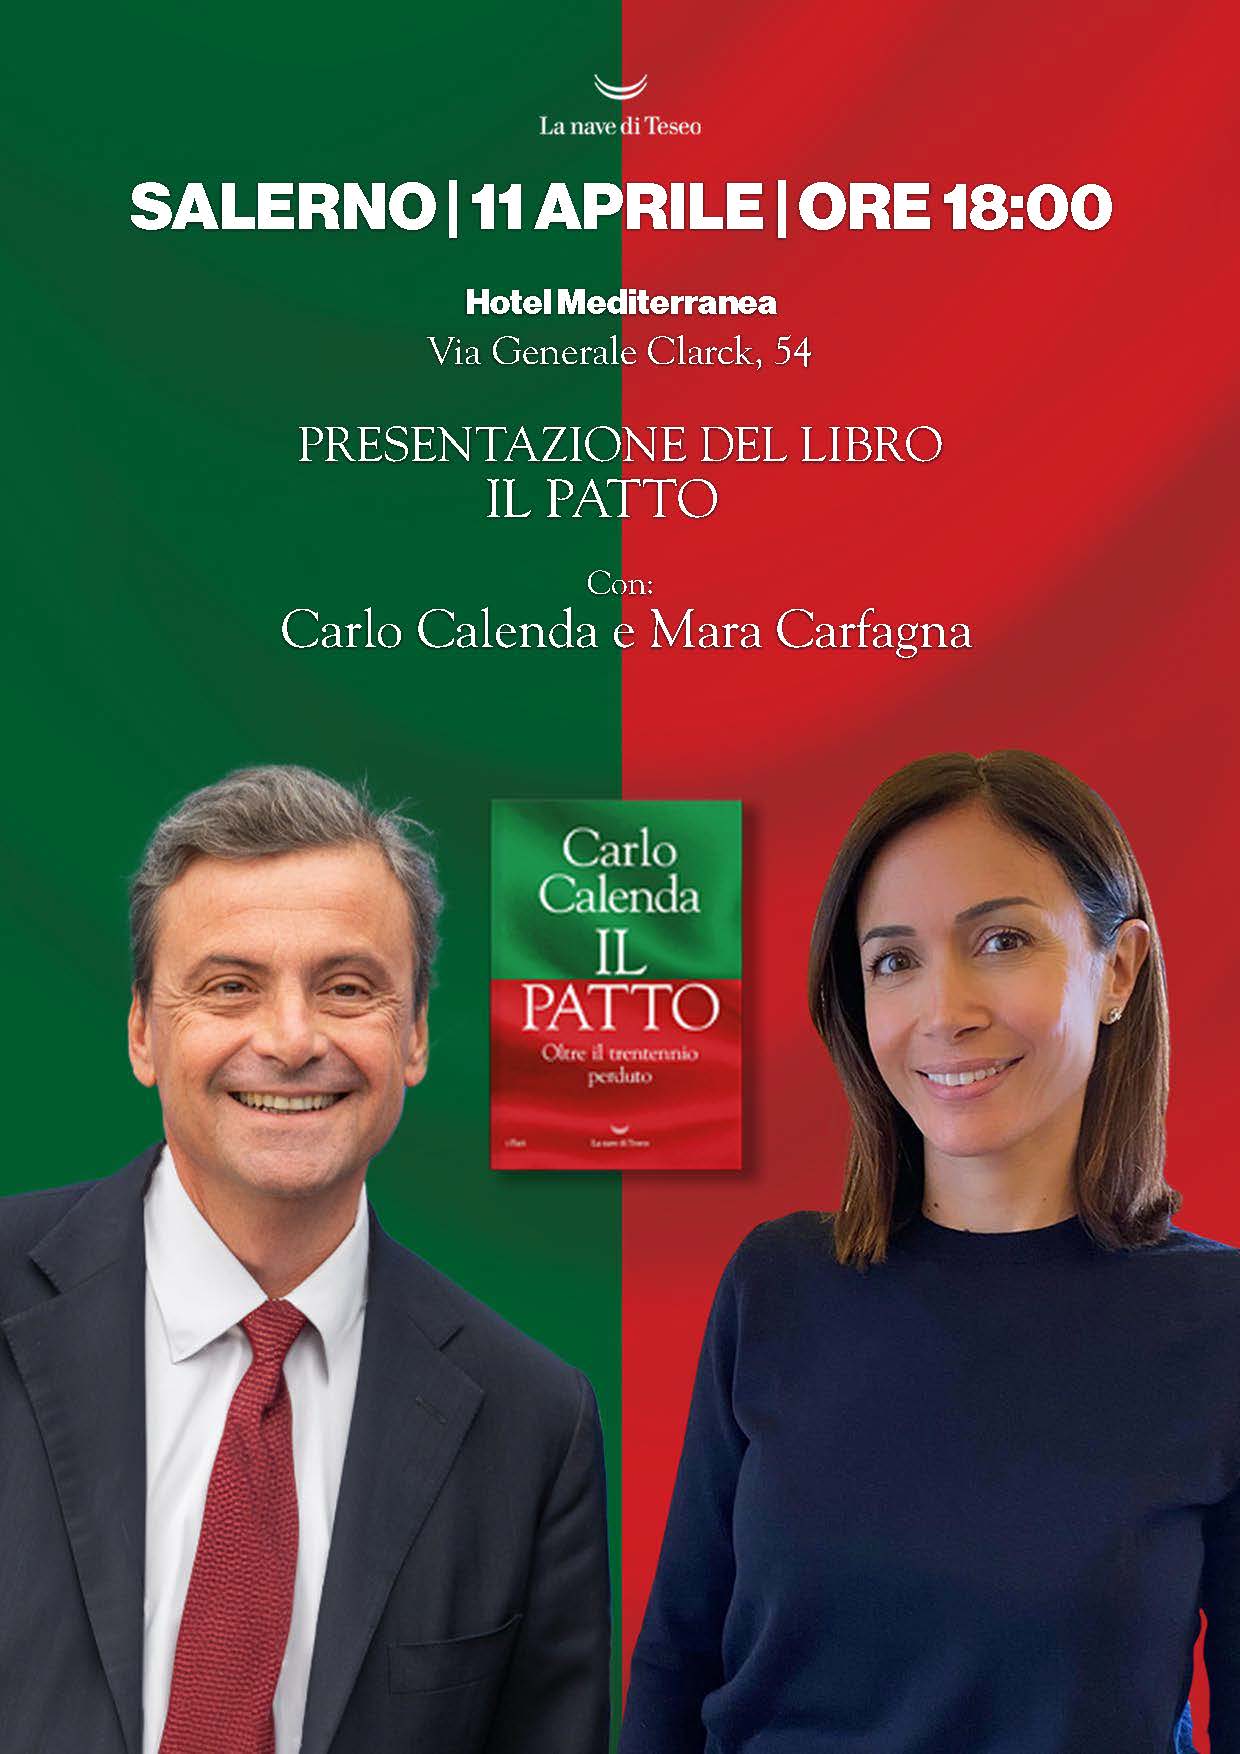 Salerno: Azione, incontro con Carlo Calenda e Mara Carfagna